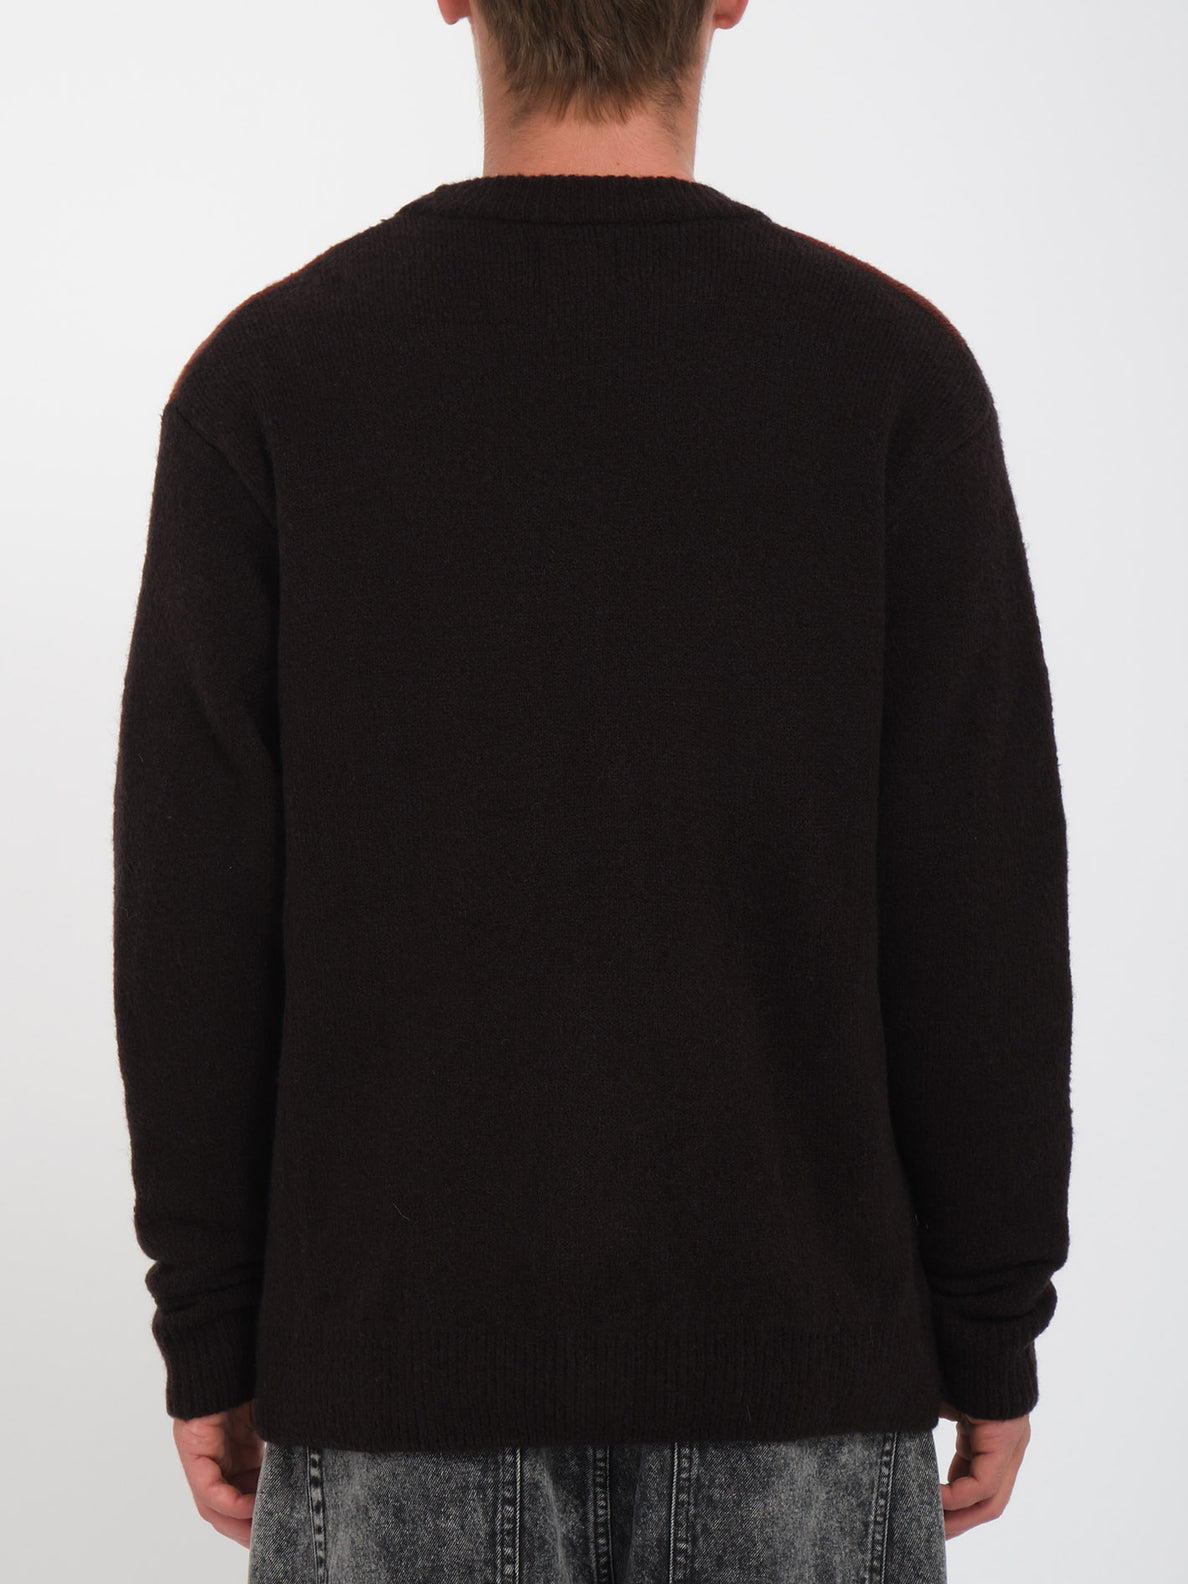 ボルコム メンズ セーター セーター Anarchietour カラー:Black